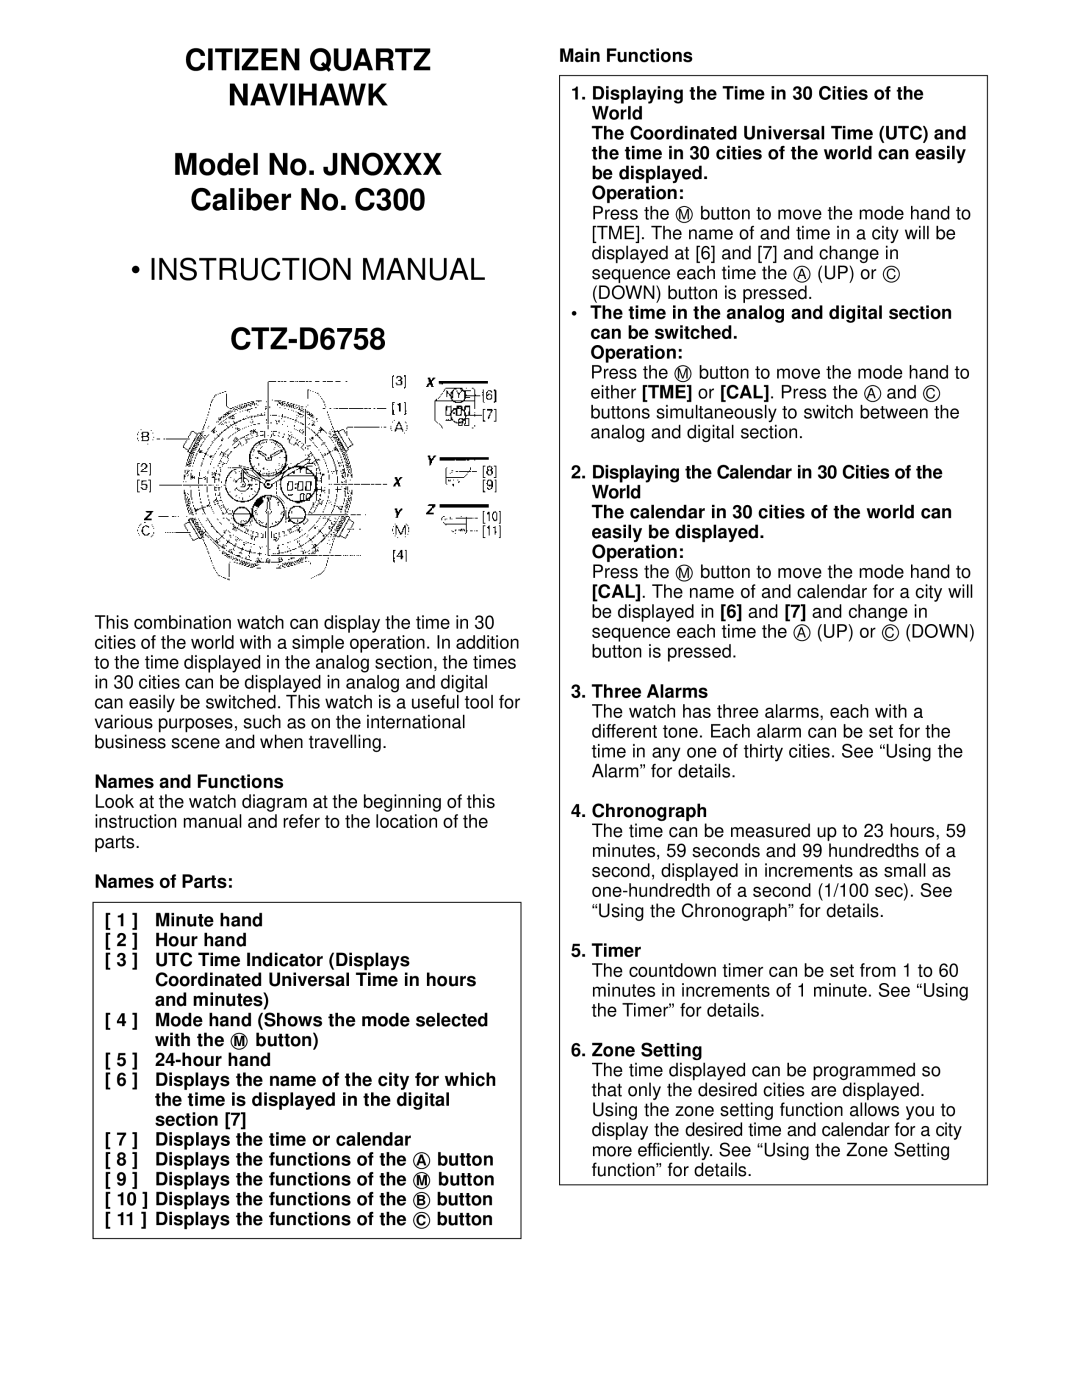 Citizen instruction manual CITIZEN QUARTZ NAVIHAWK Model No. JNOXXX Caliber No. C300, Instruction Manual, CTZ-D6758 